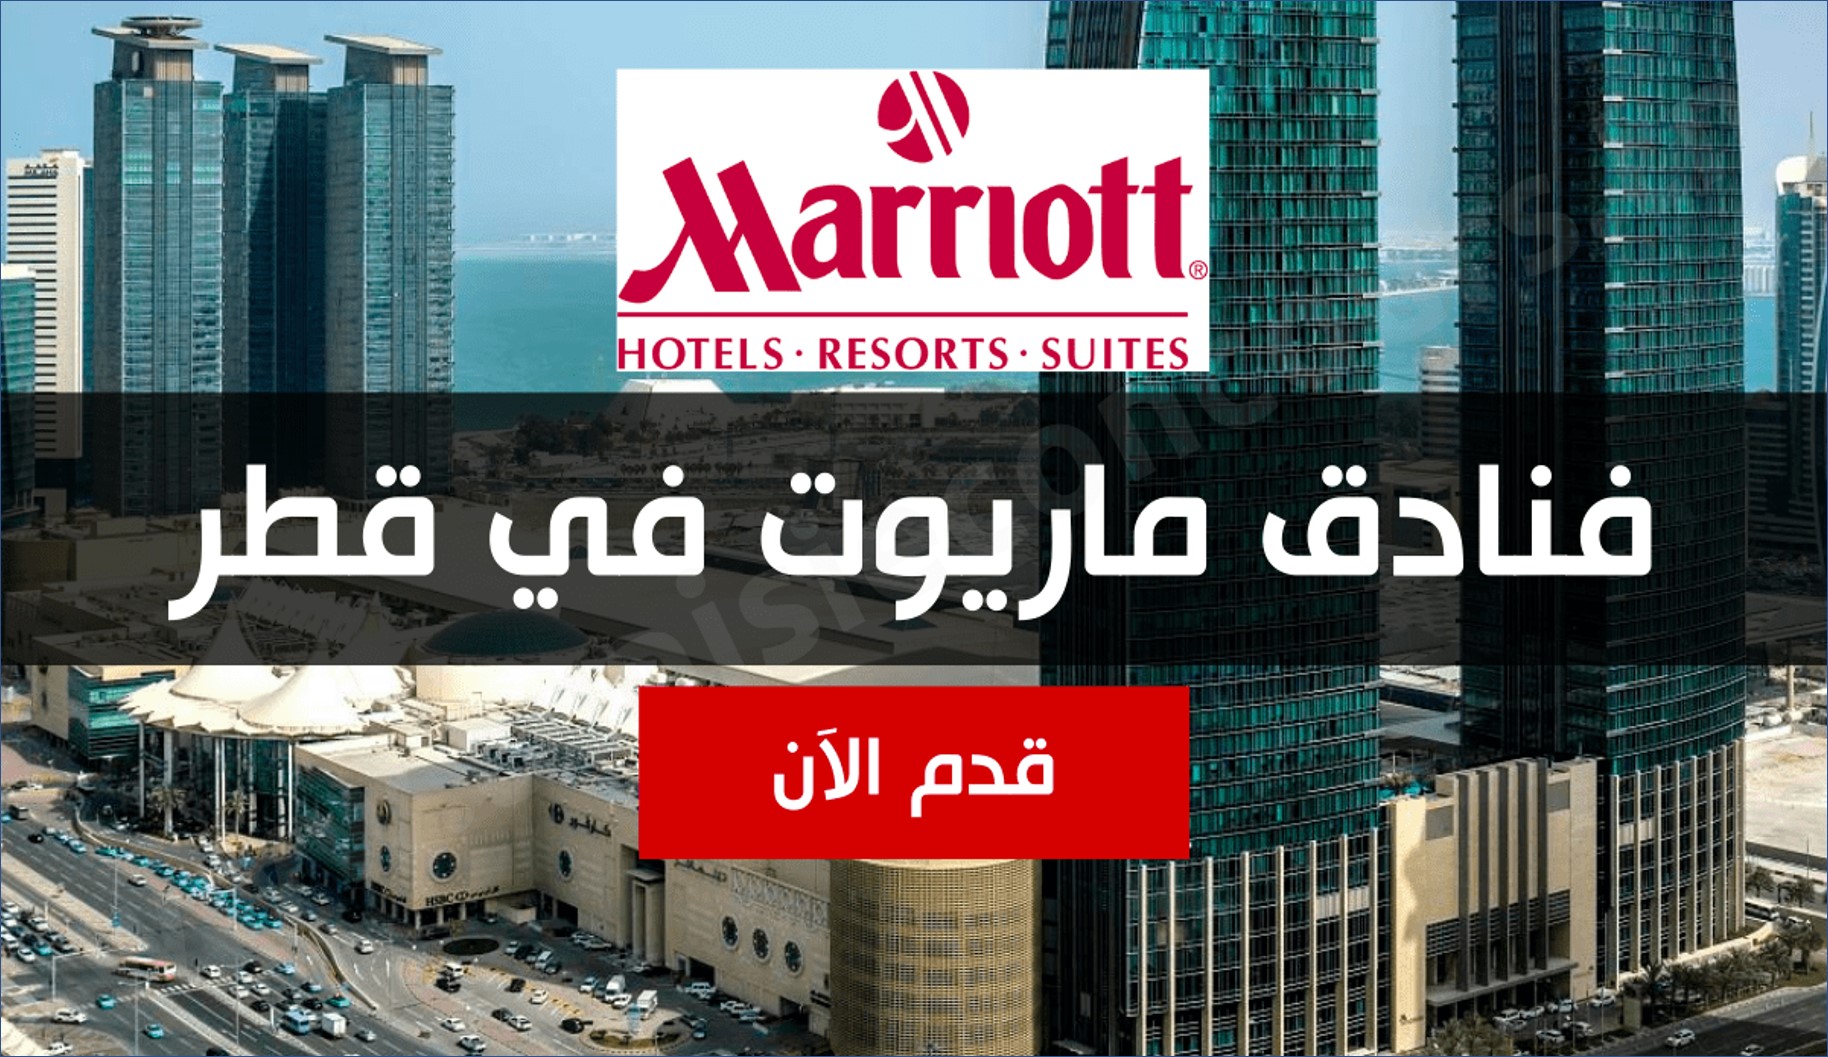 فنادق ماريوت قطر يعلن عن وظائف جديدة للرجال والنساء